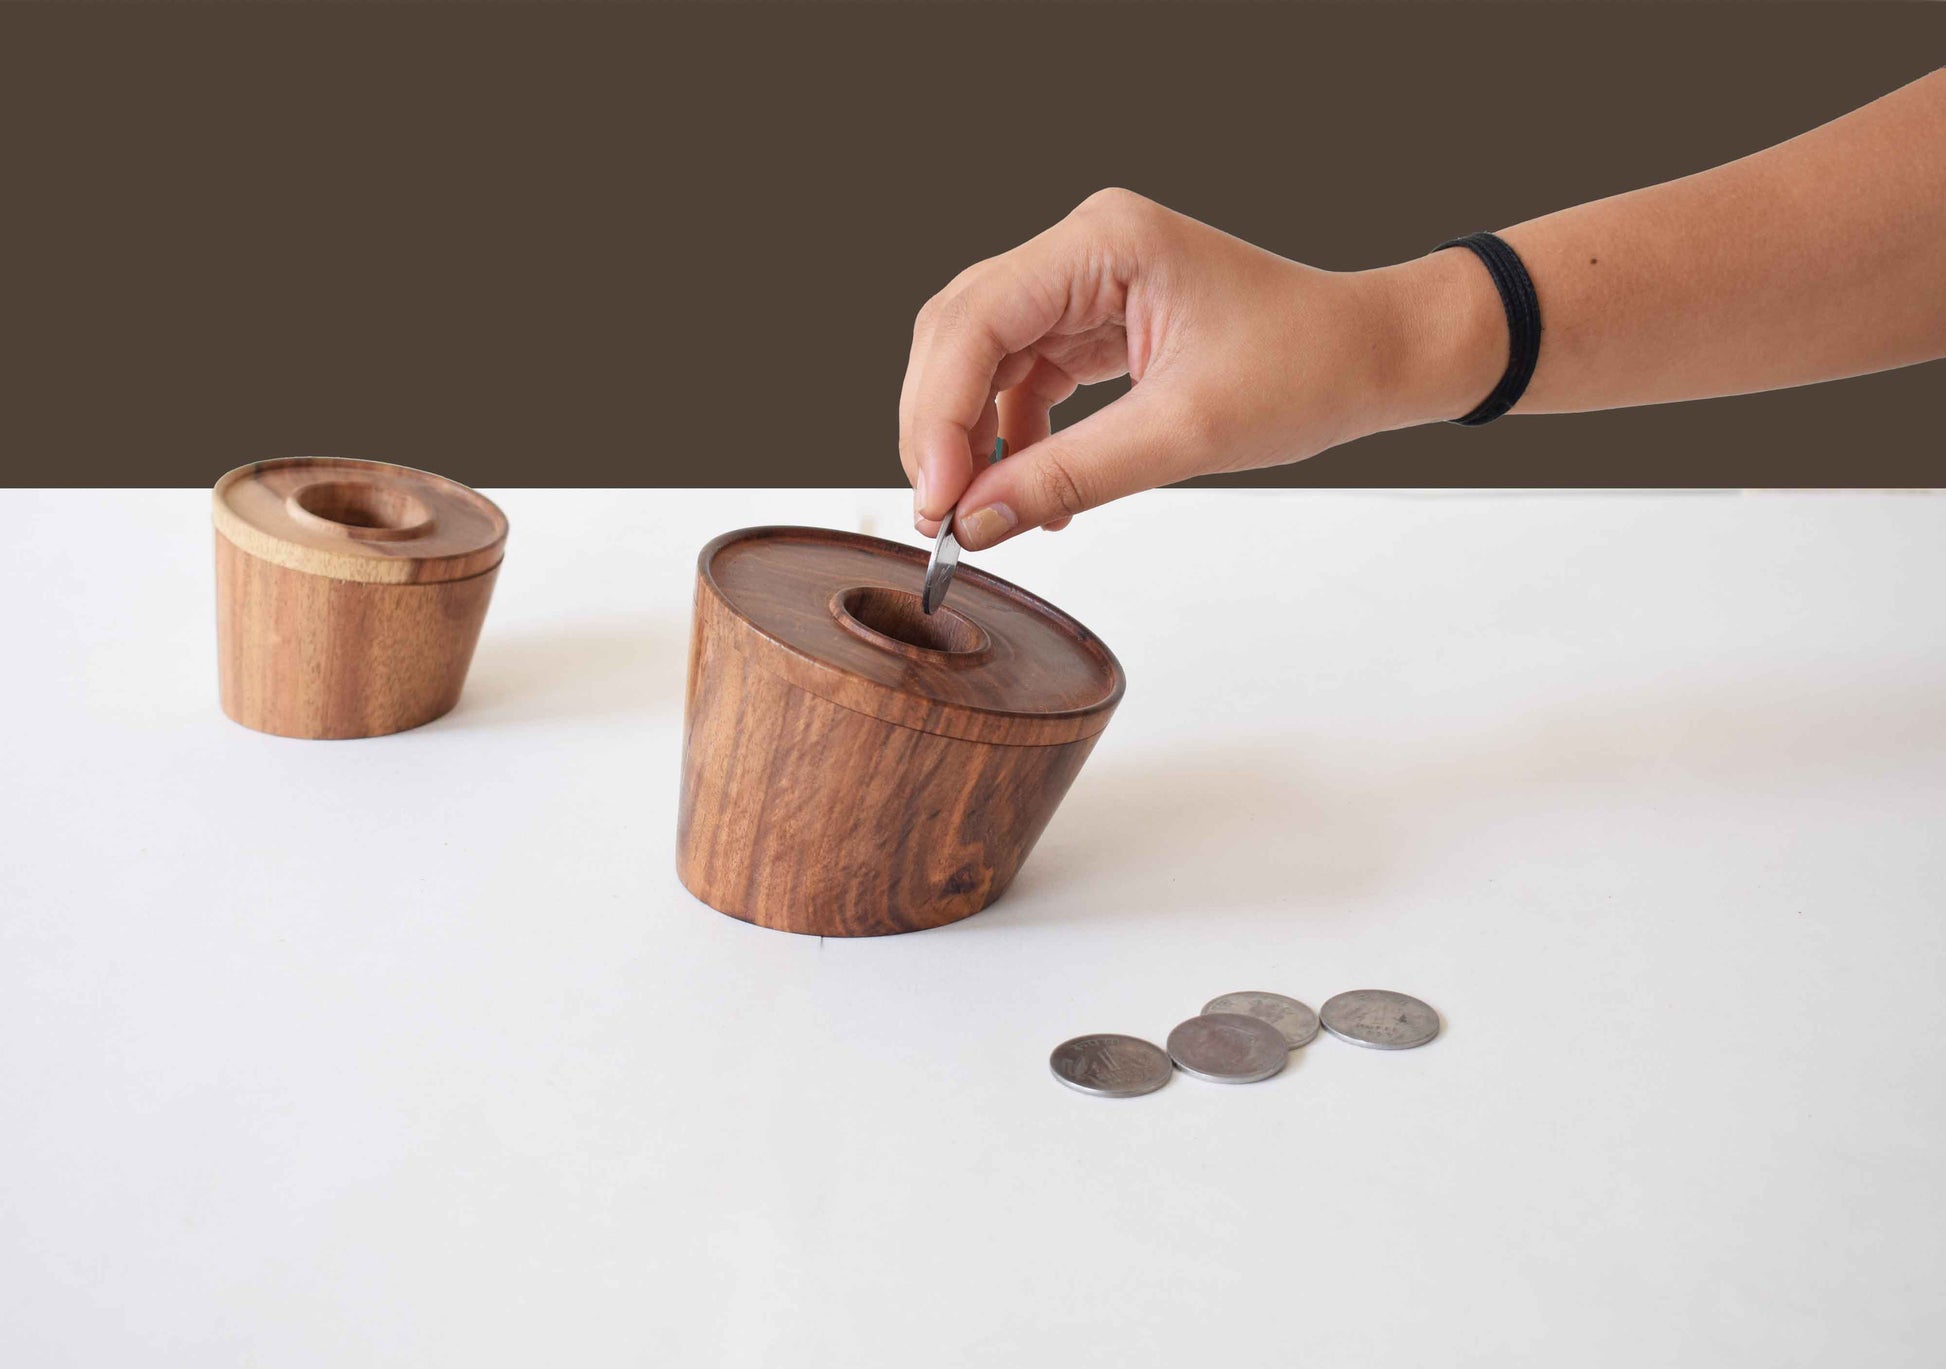 kids return gift ideas - coin box 